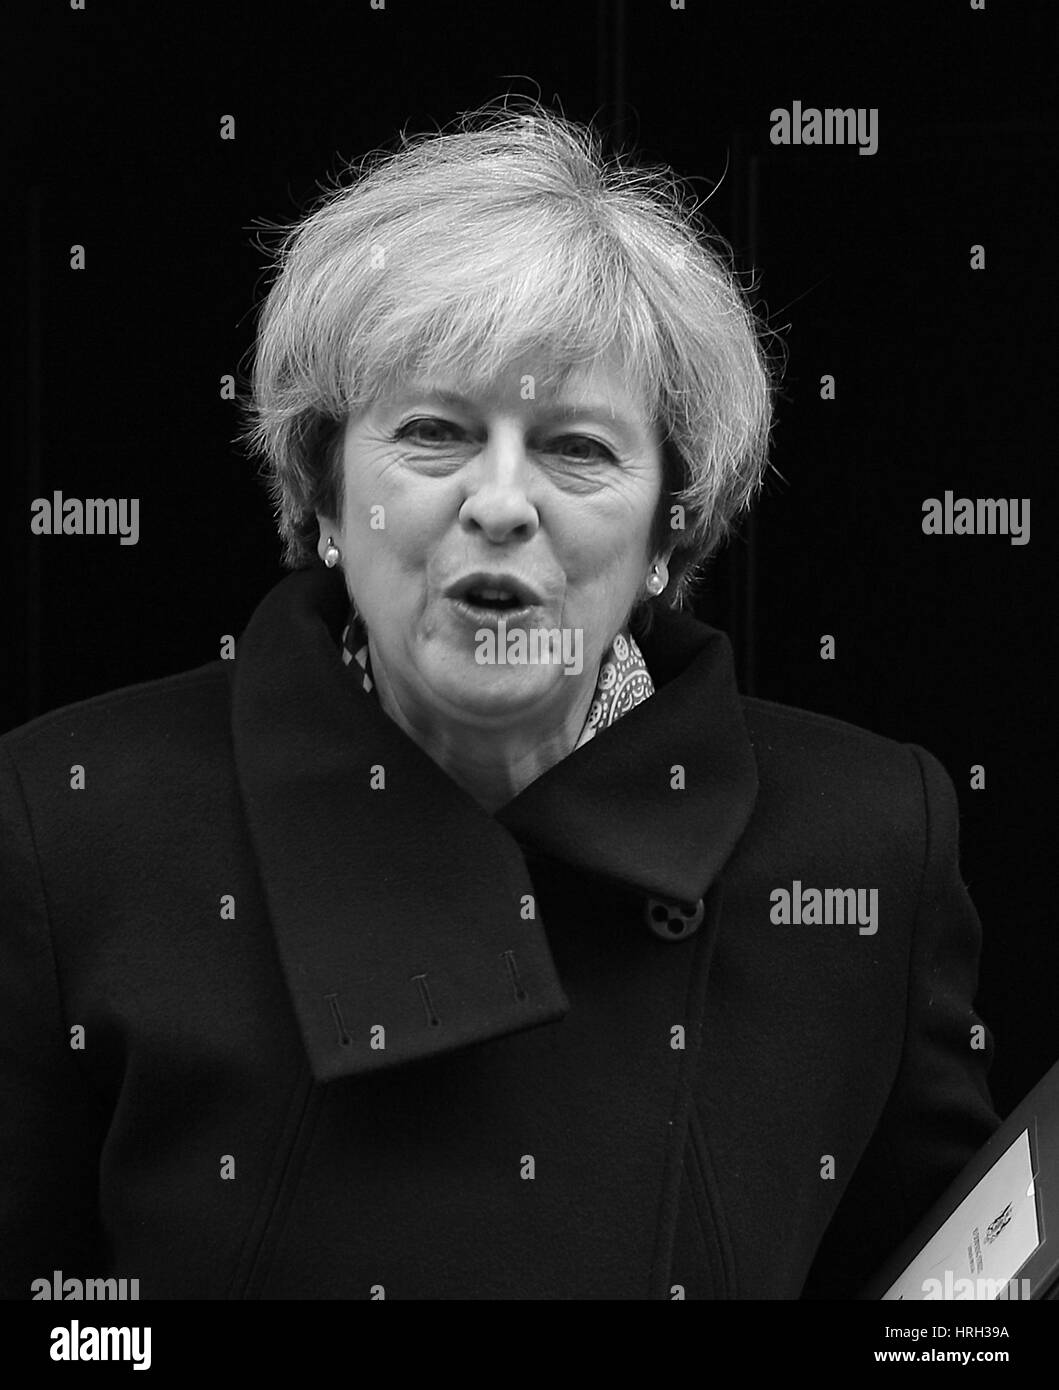 Londra, UK, 1 Mar 2017: il primo ministro Theresa Maggio ( Immagine Altered digitalmente a monocromatica ) visto lasciare 10 di Downing Street per PMQs alla House of Commons. Foto Stock